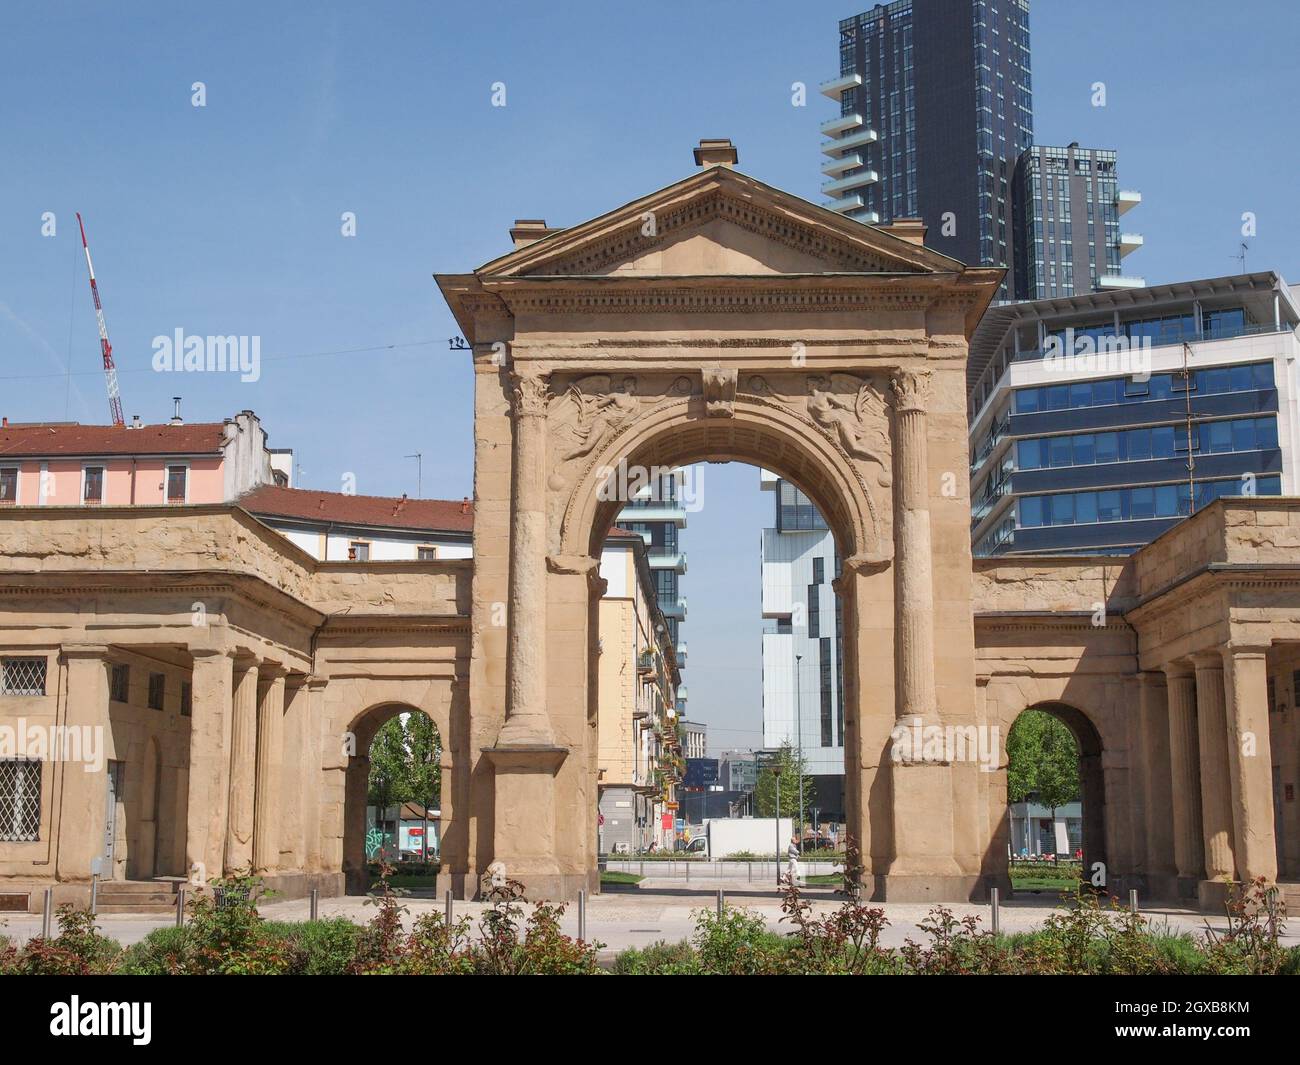 The Porta Nuova city gates in Milan Italy. Stock Photo